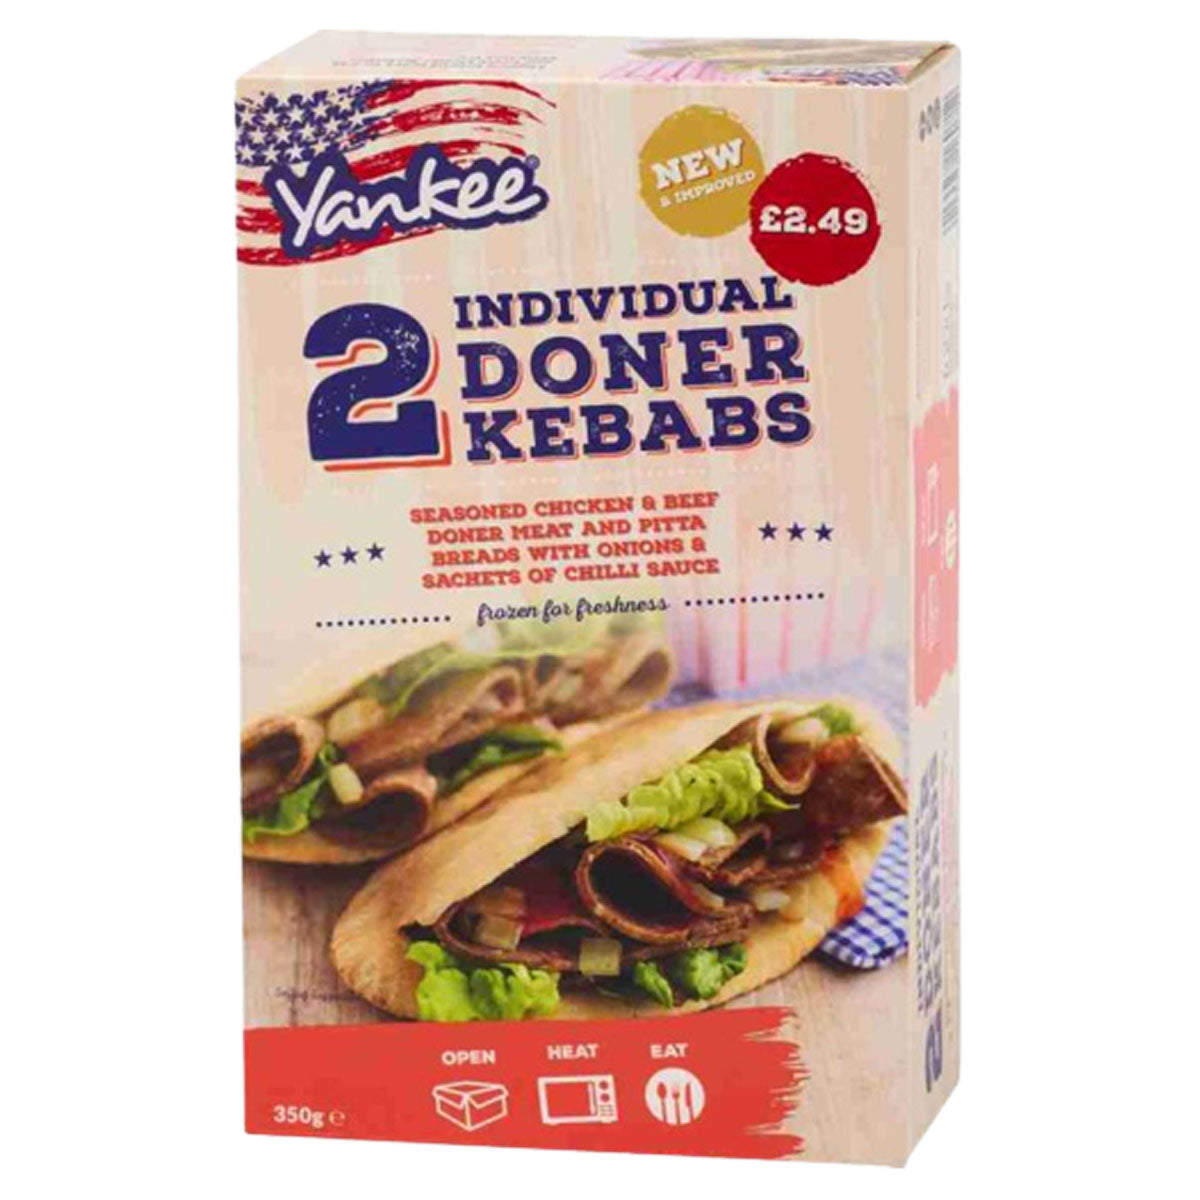 A box of Yankee - 2 Doner Kebab - 350g individual doner kebabs.